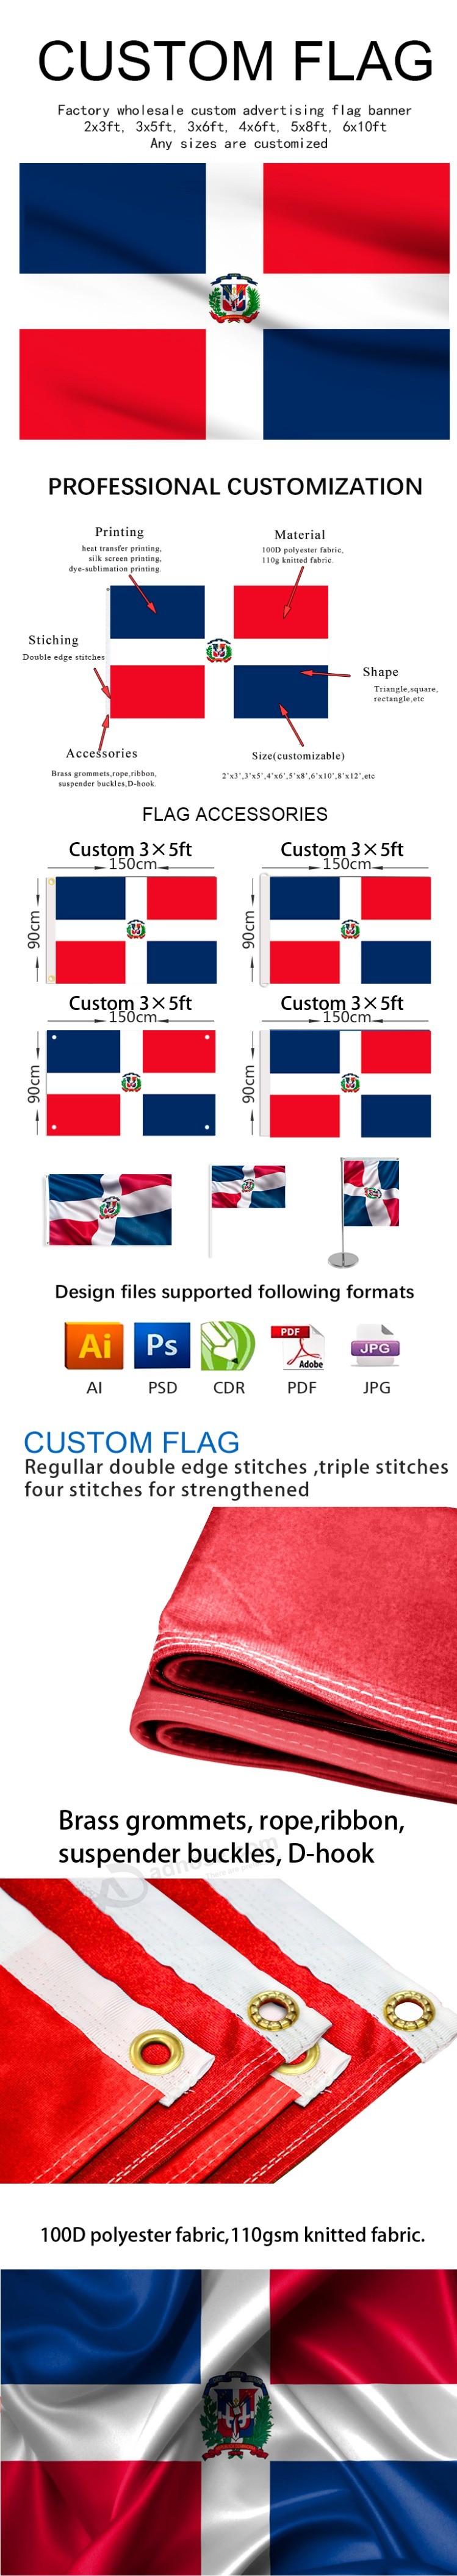 Produttore di bandiere nazionali a sublimazione di calore stampato a tessuto diretto